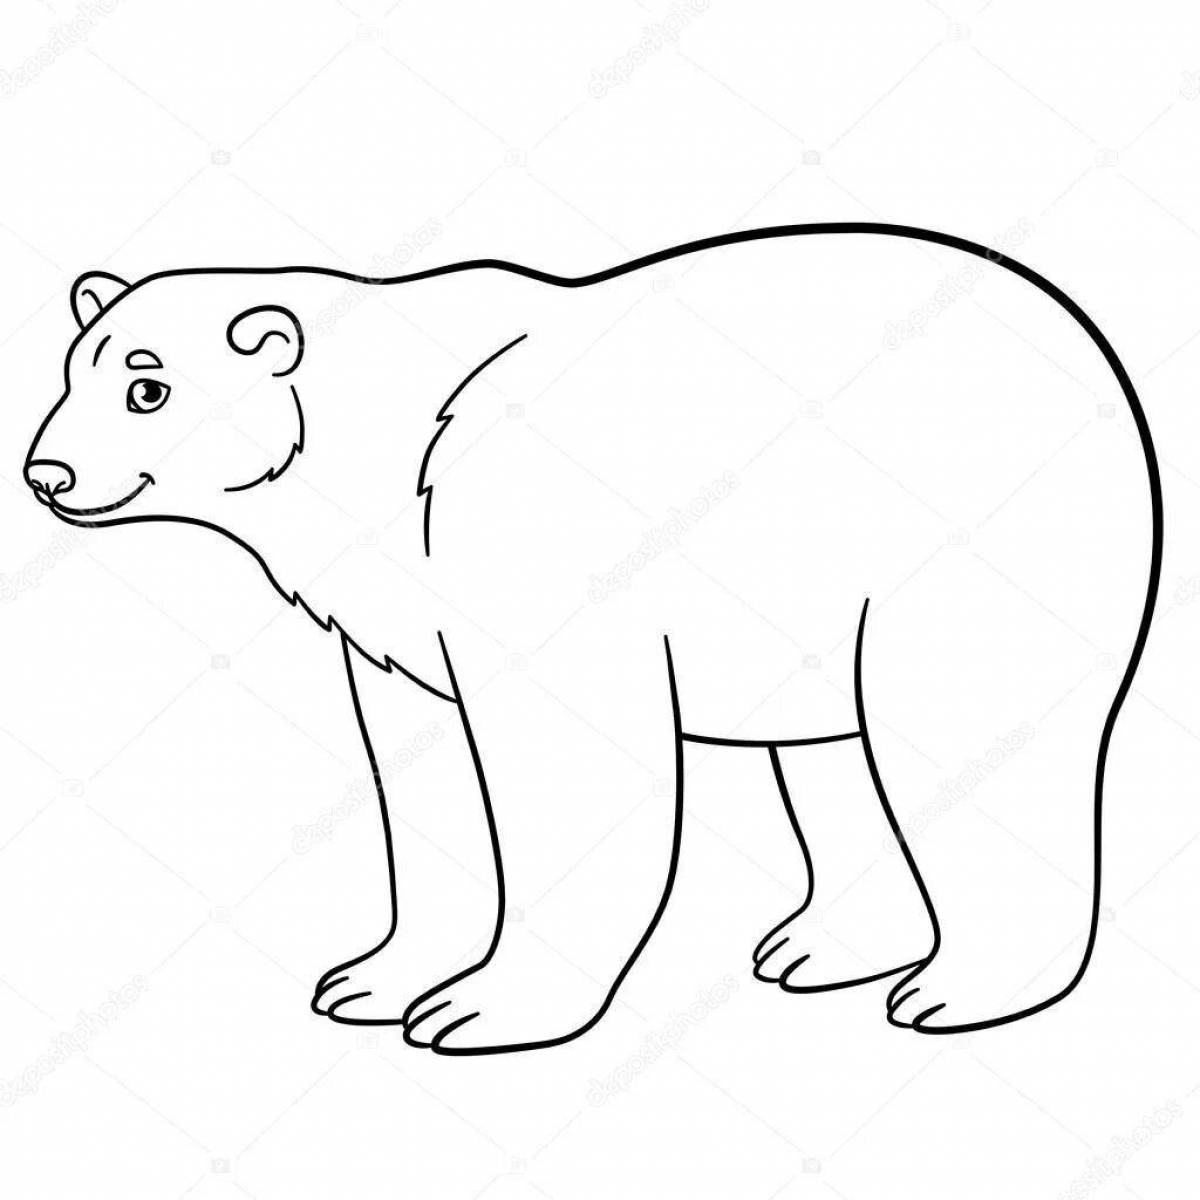 Coloring page charming umka and bear